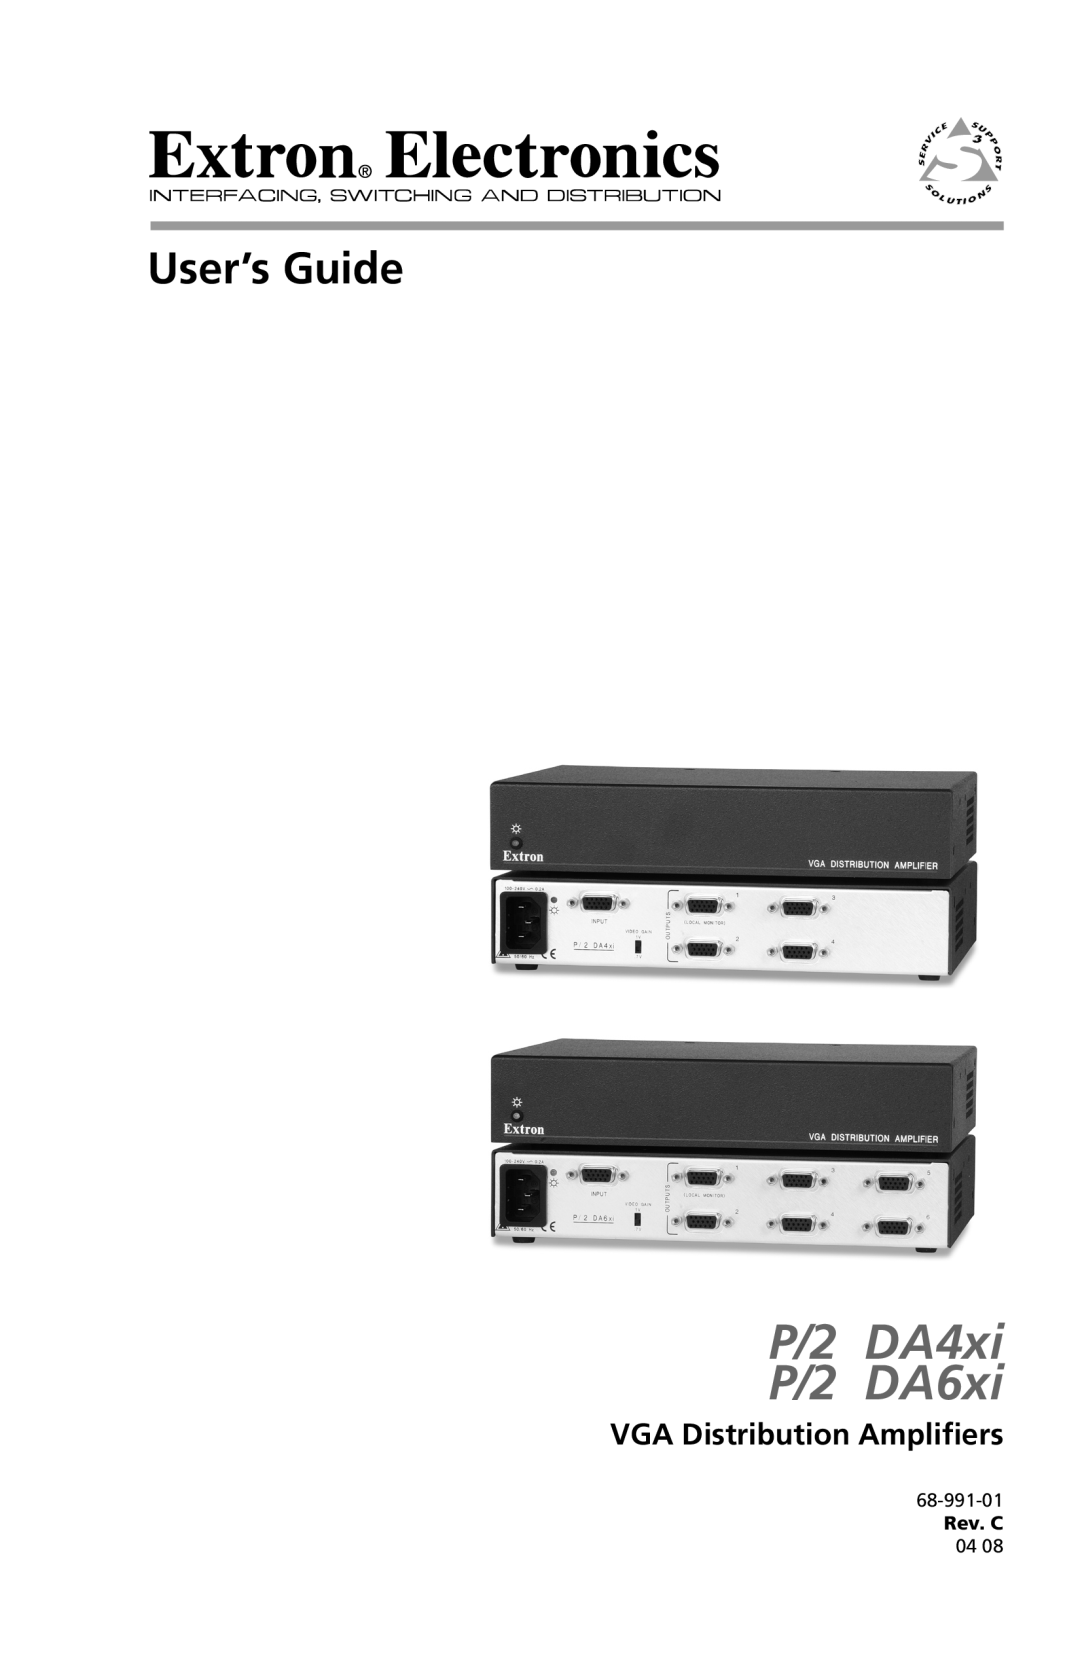 Extron electronic P/2 DA4xi s manual VGA Distribution Amplifiers, P/2 DA4xi P/2 DA6xi, User’s Guide, 68-991-01, Rev. C 